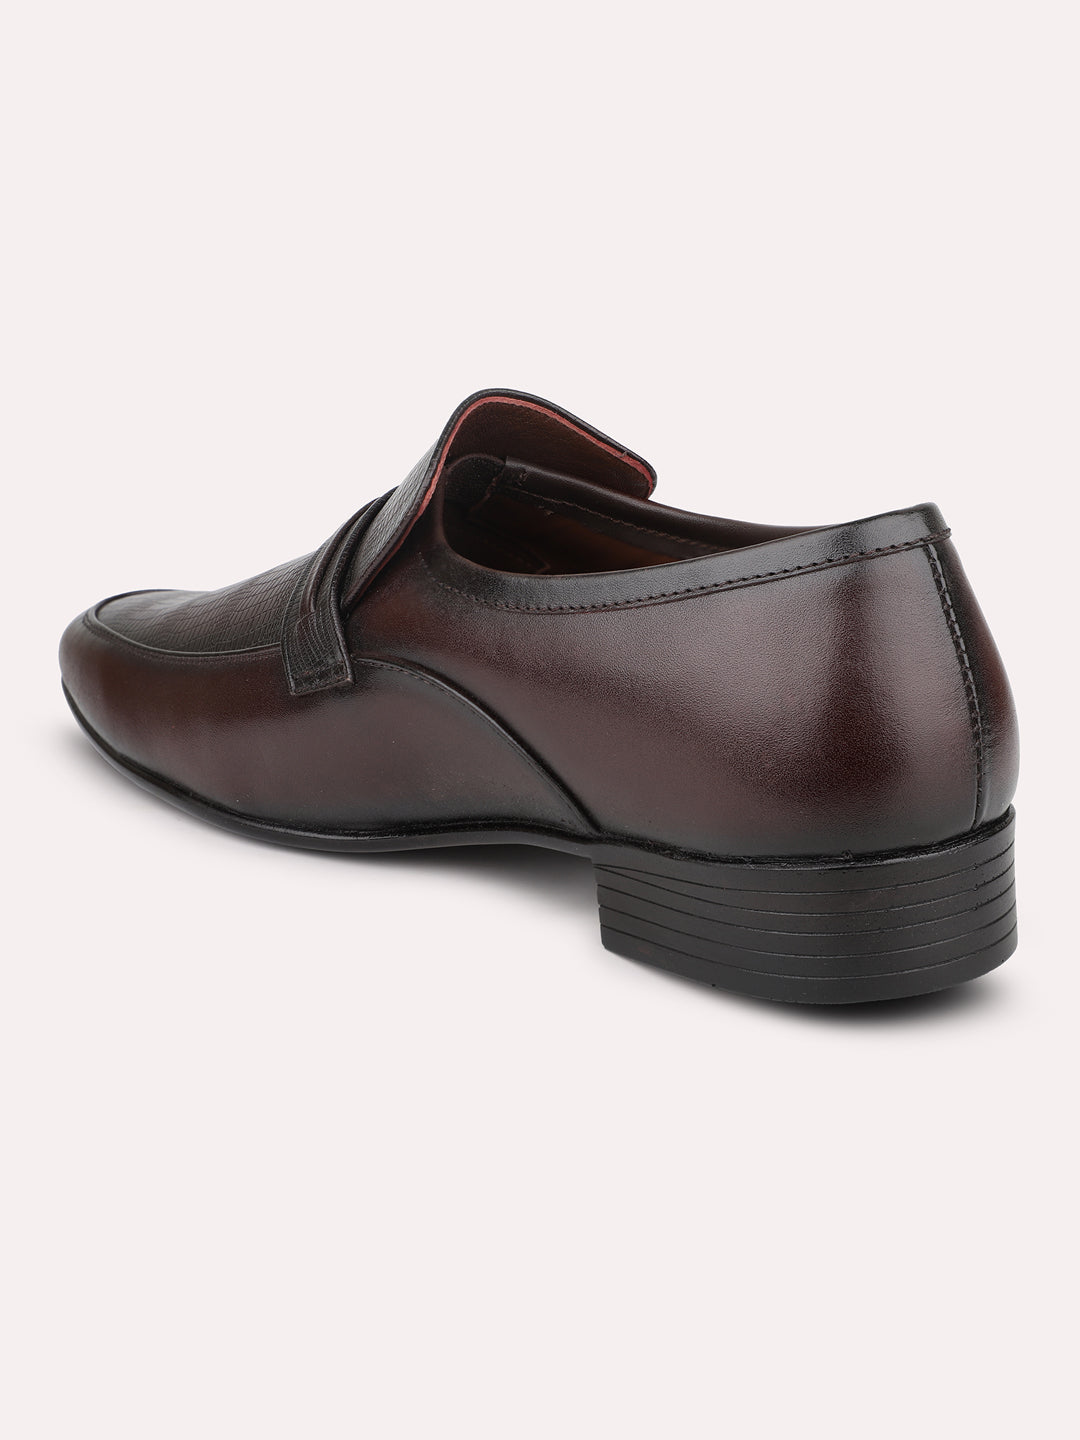 Privo Cherry Formal Slip-On Shoes For Men